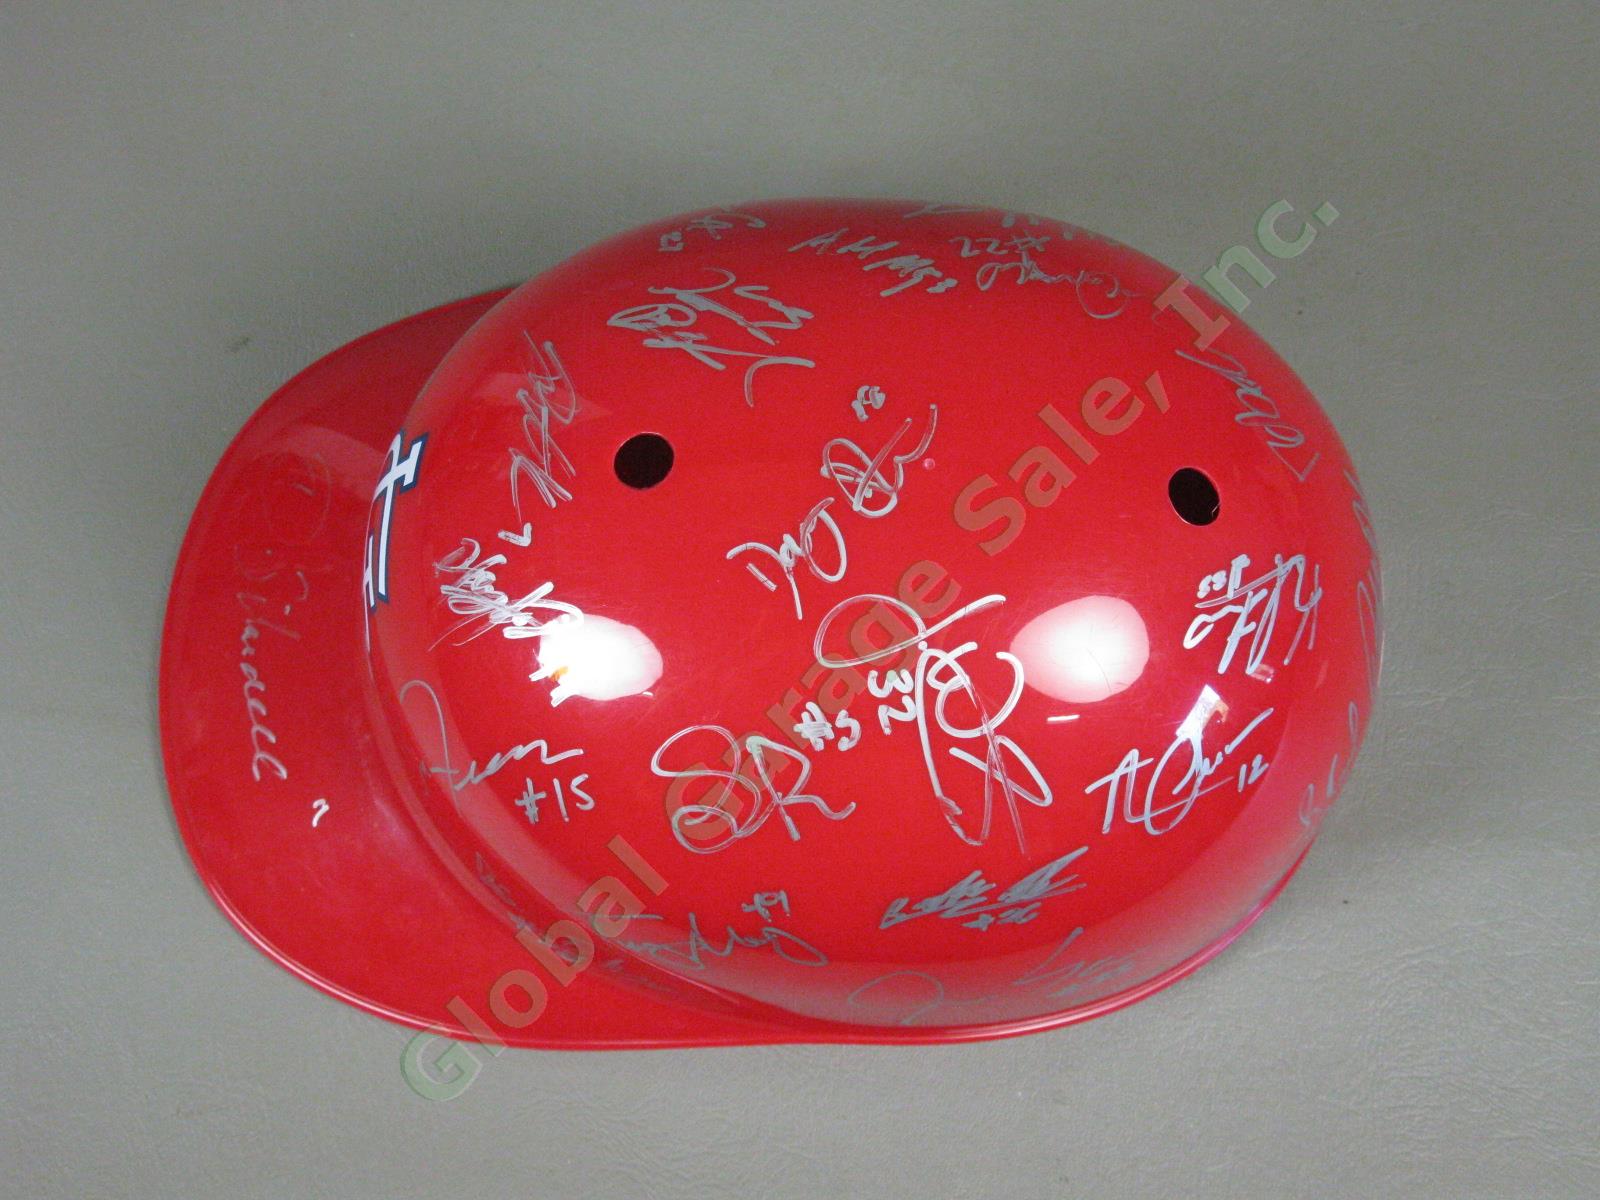 2012 Batavia Muckdogs Team Signed Baseball Helmet NYPL St. Louis Cardinals NR 4